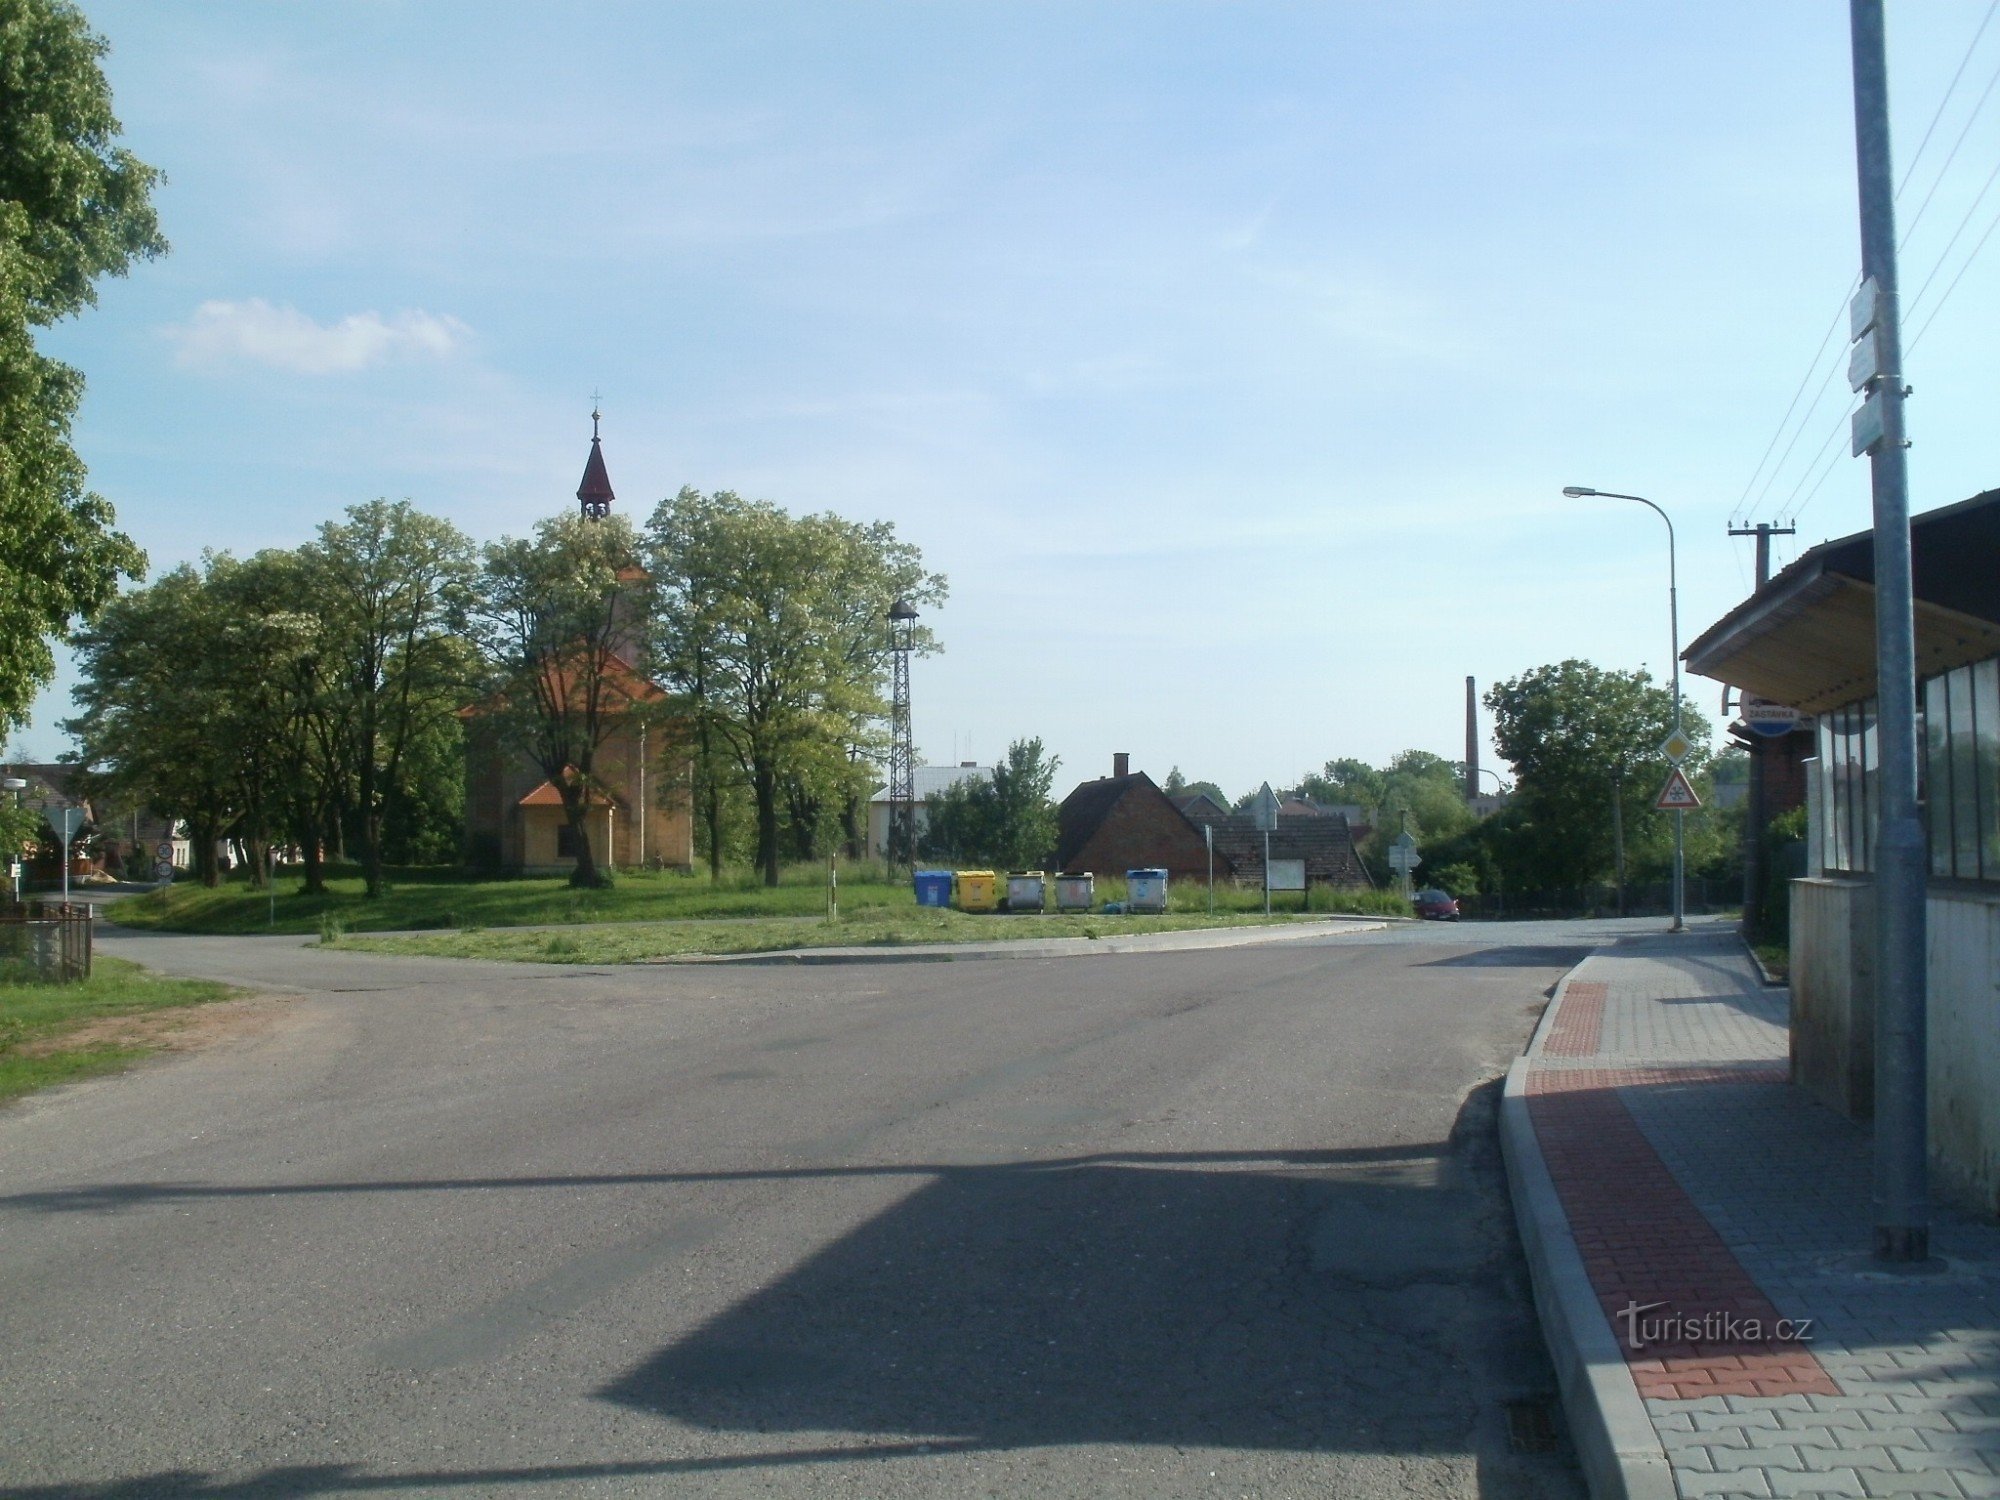 Jeníkoviceの観光交差点